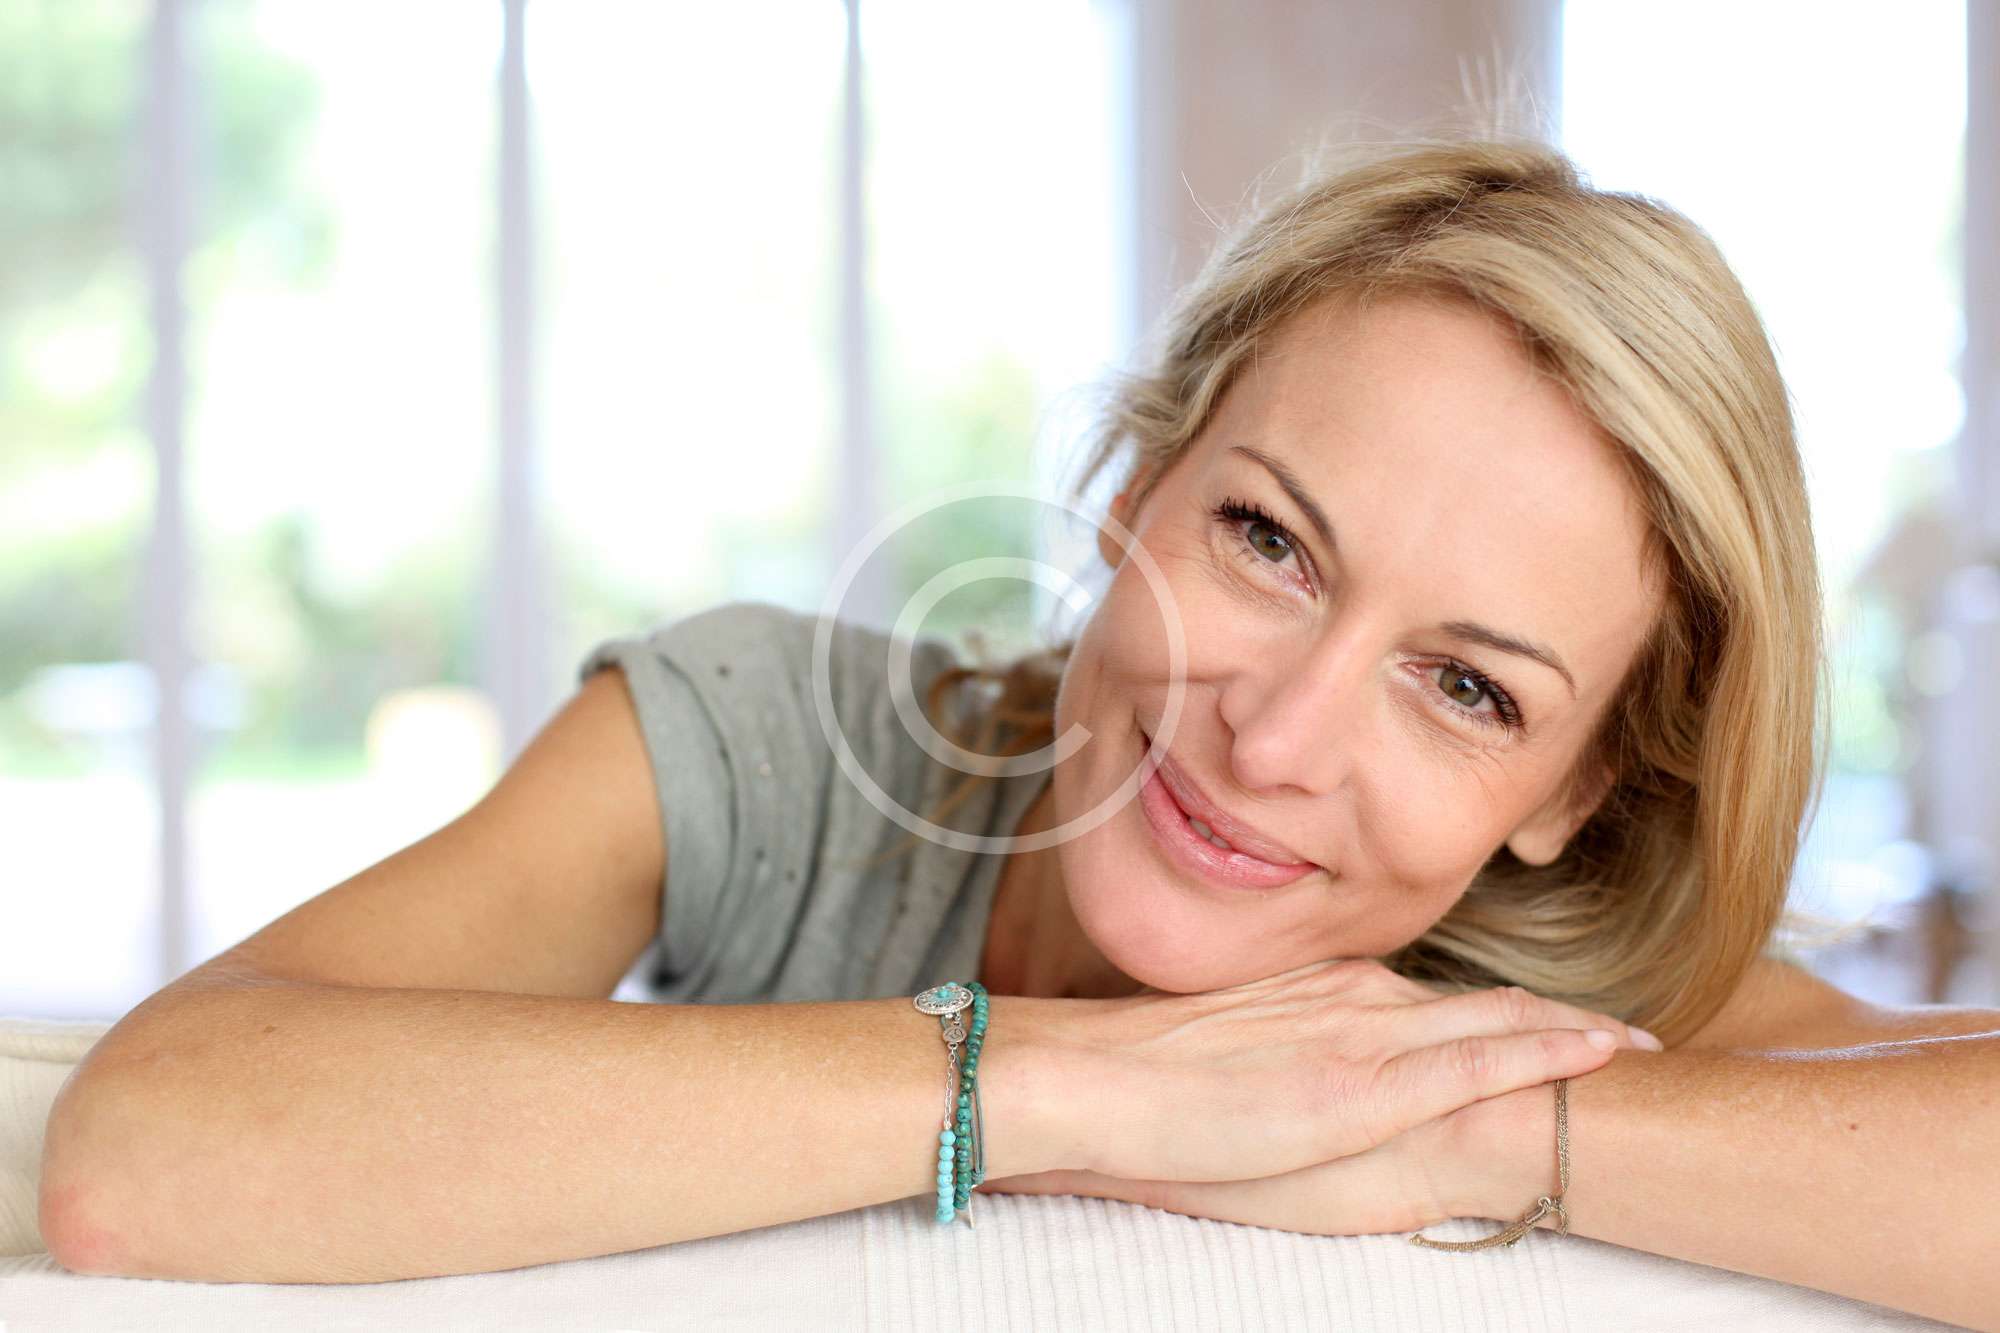 donna bionda di bolzano sorride felice senza stress mentre appoggia la testa sulle mani e guarda la fotocamera